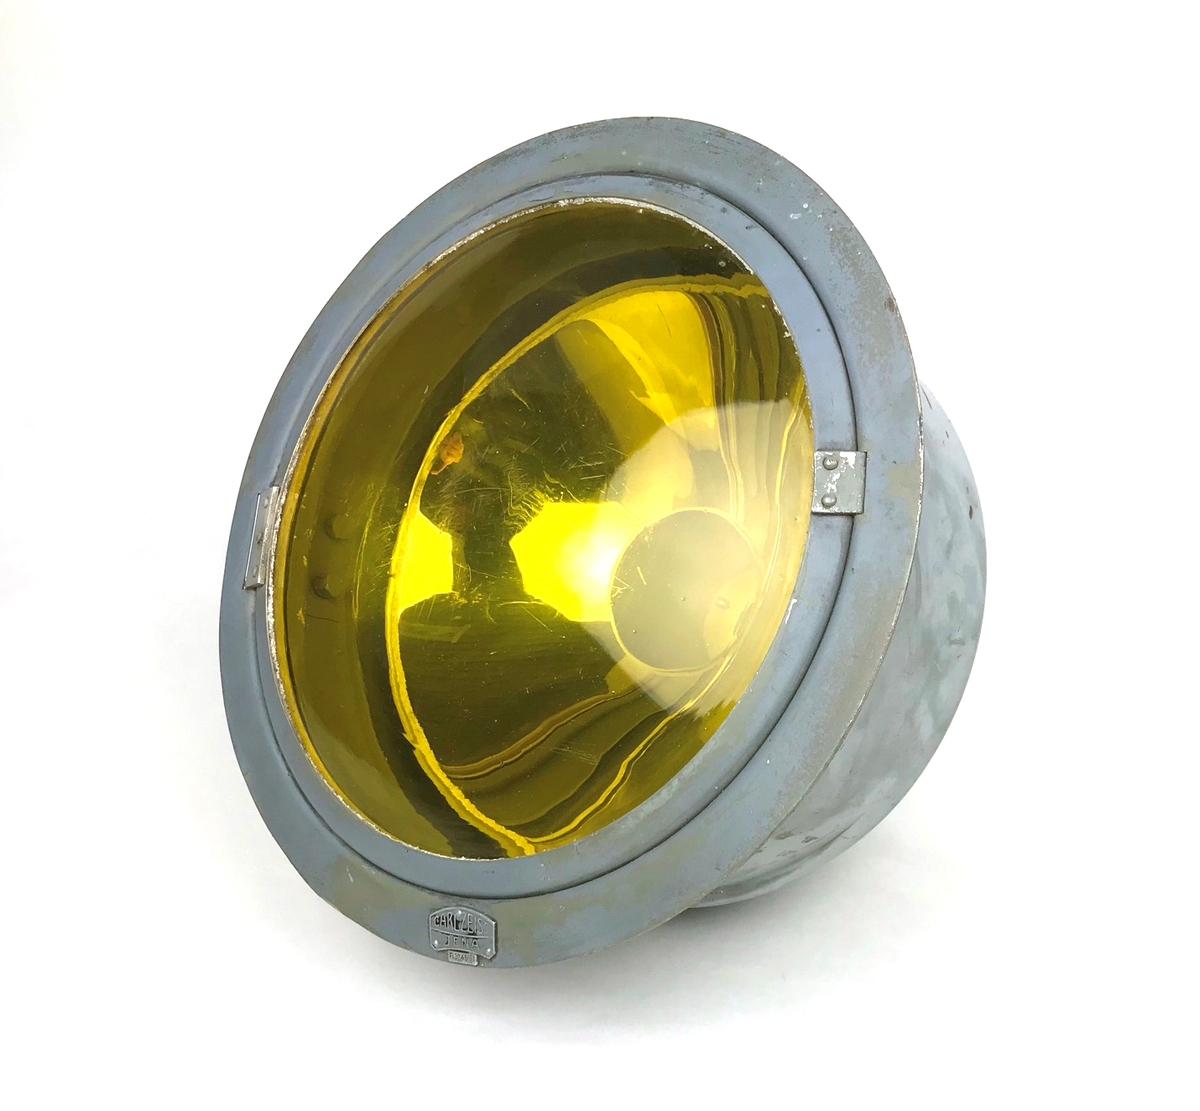 Landningsljus tillverkad av Carl Zeiss, Jena, Tyskland. Hölje av metall, gult glas, insats försilvrad. Lamphållare saknas.